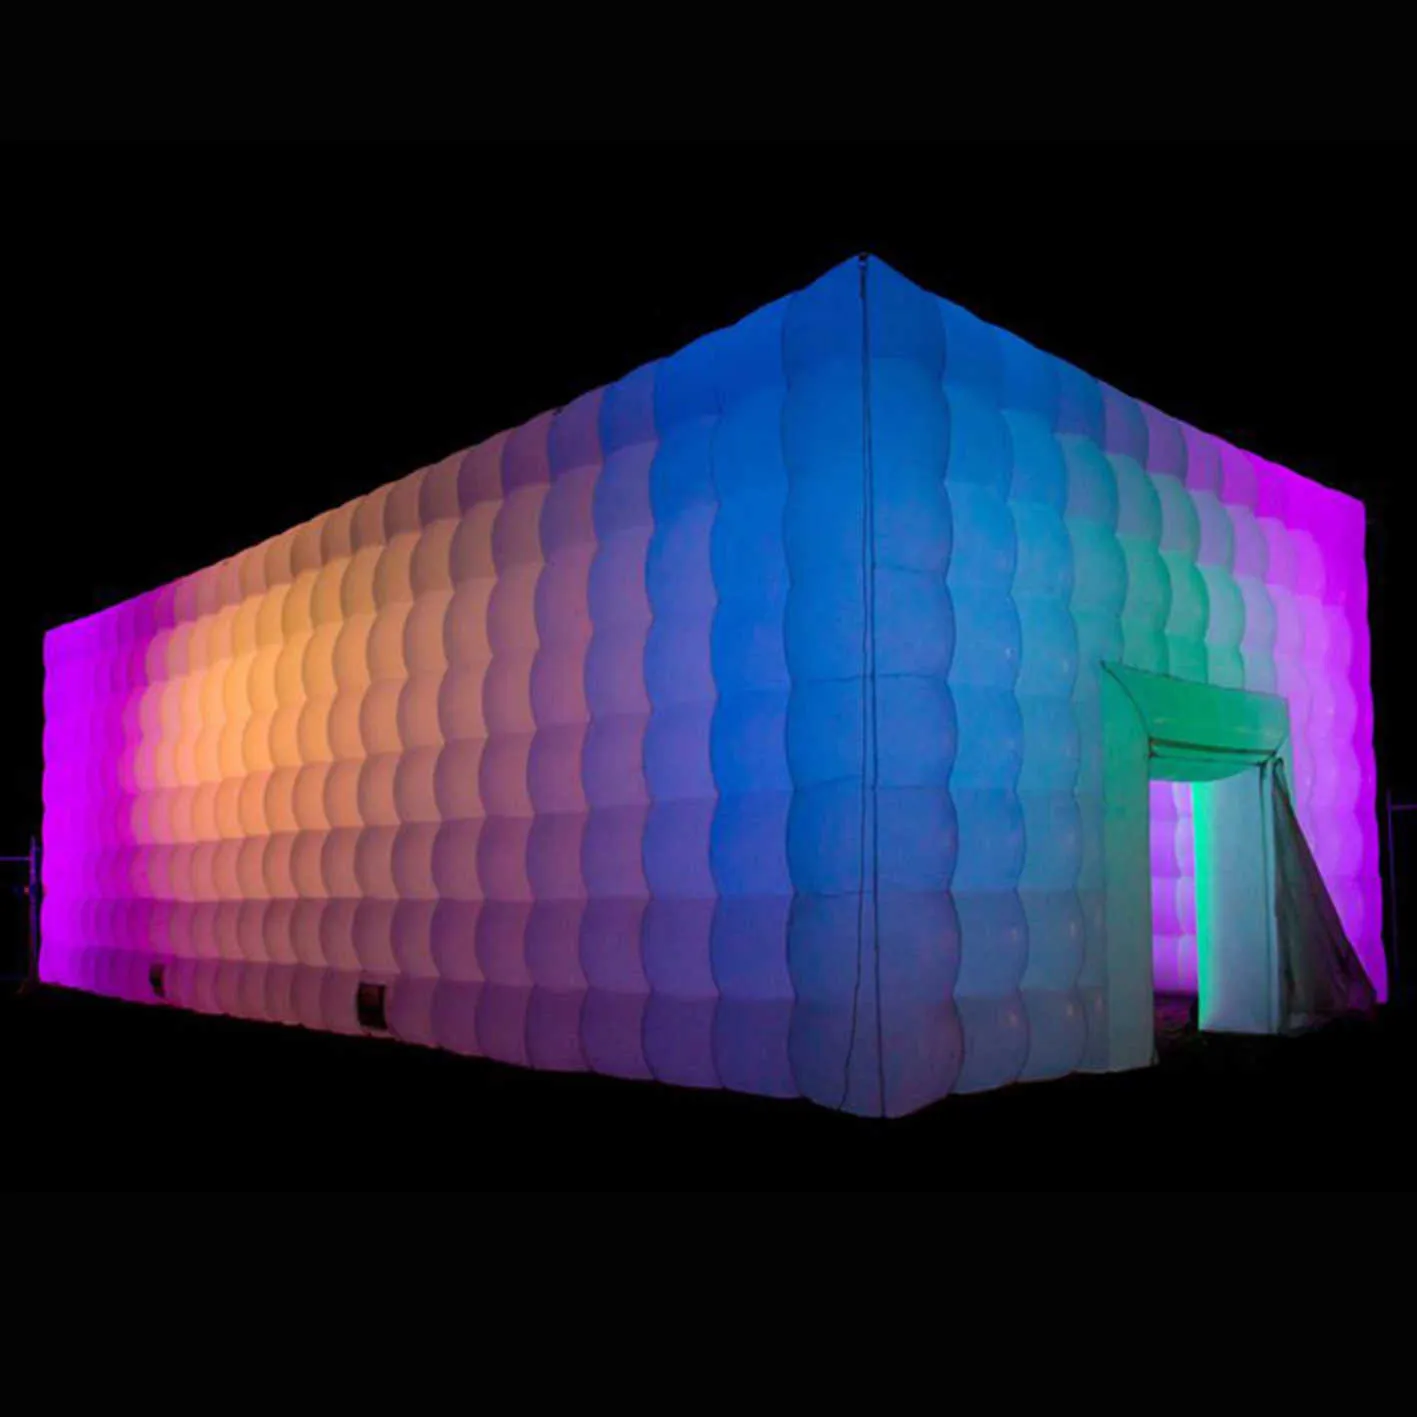 groothandel Lnflatable vierkante tent sporttent met kleurrijke lichten opblaasbare kubieke structuur bouwtent voor evenementenfeest